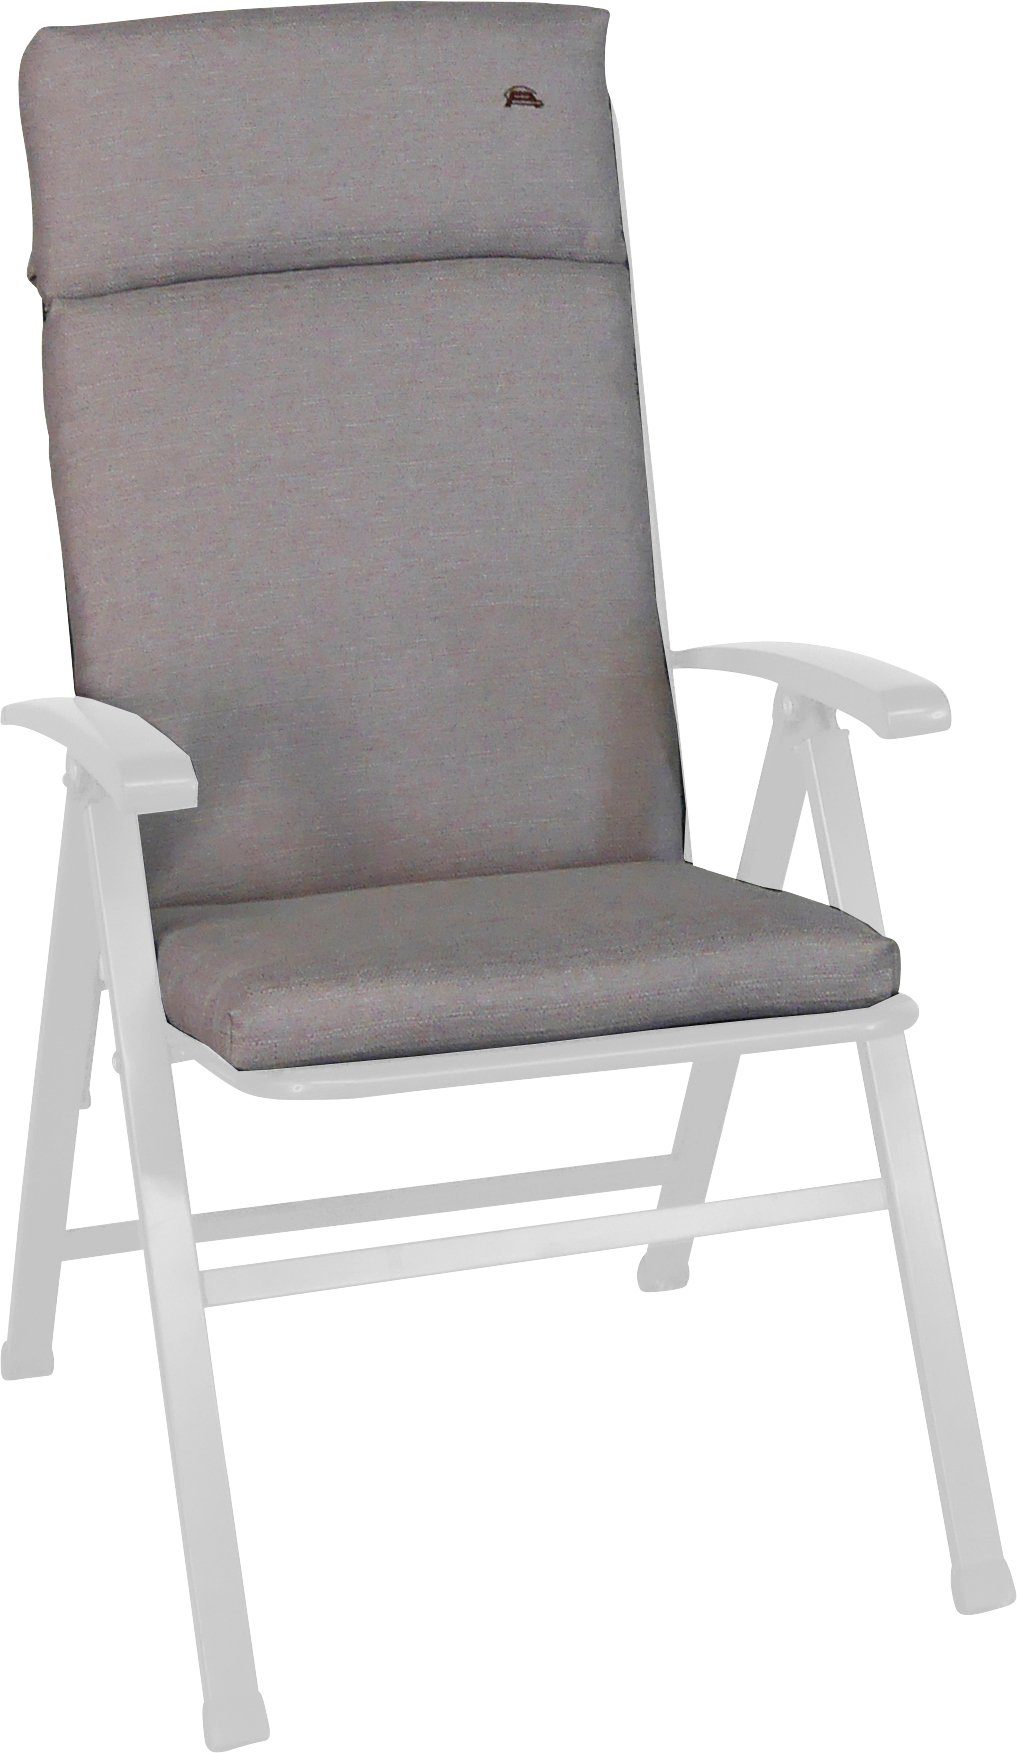 Angerer Freizeitmöbel Sesselauflage Smart, cm (B/T): 47x112 ca. beige